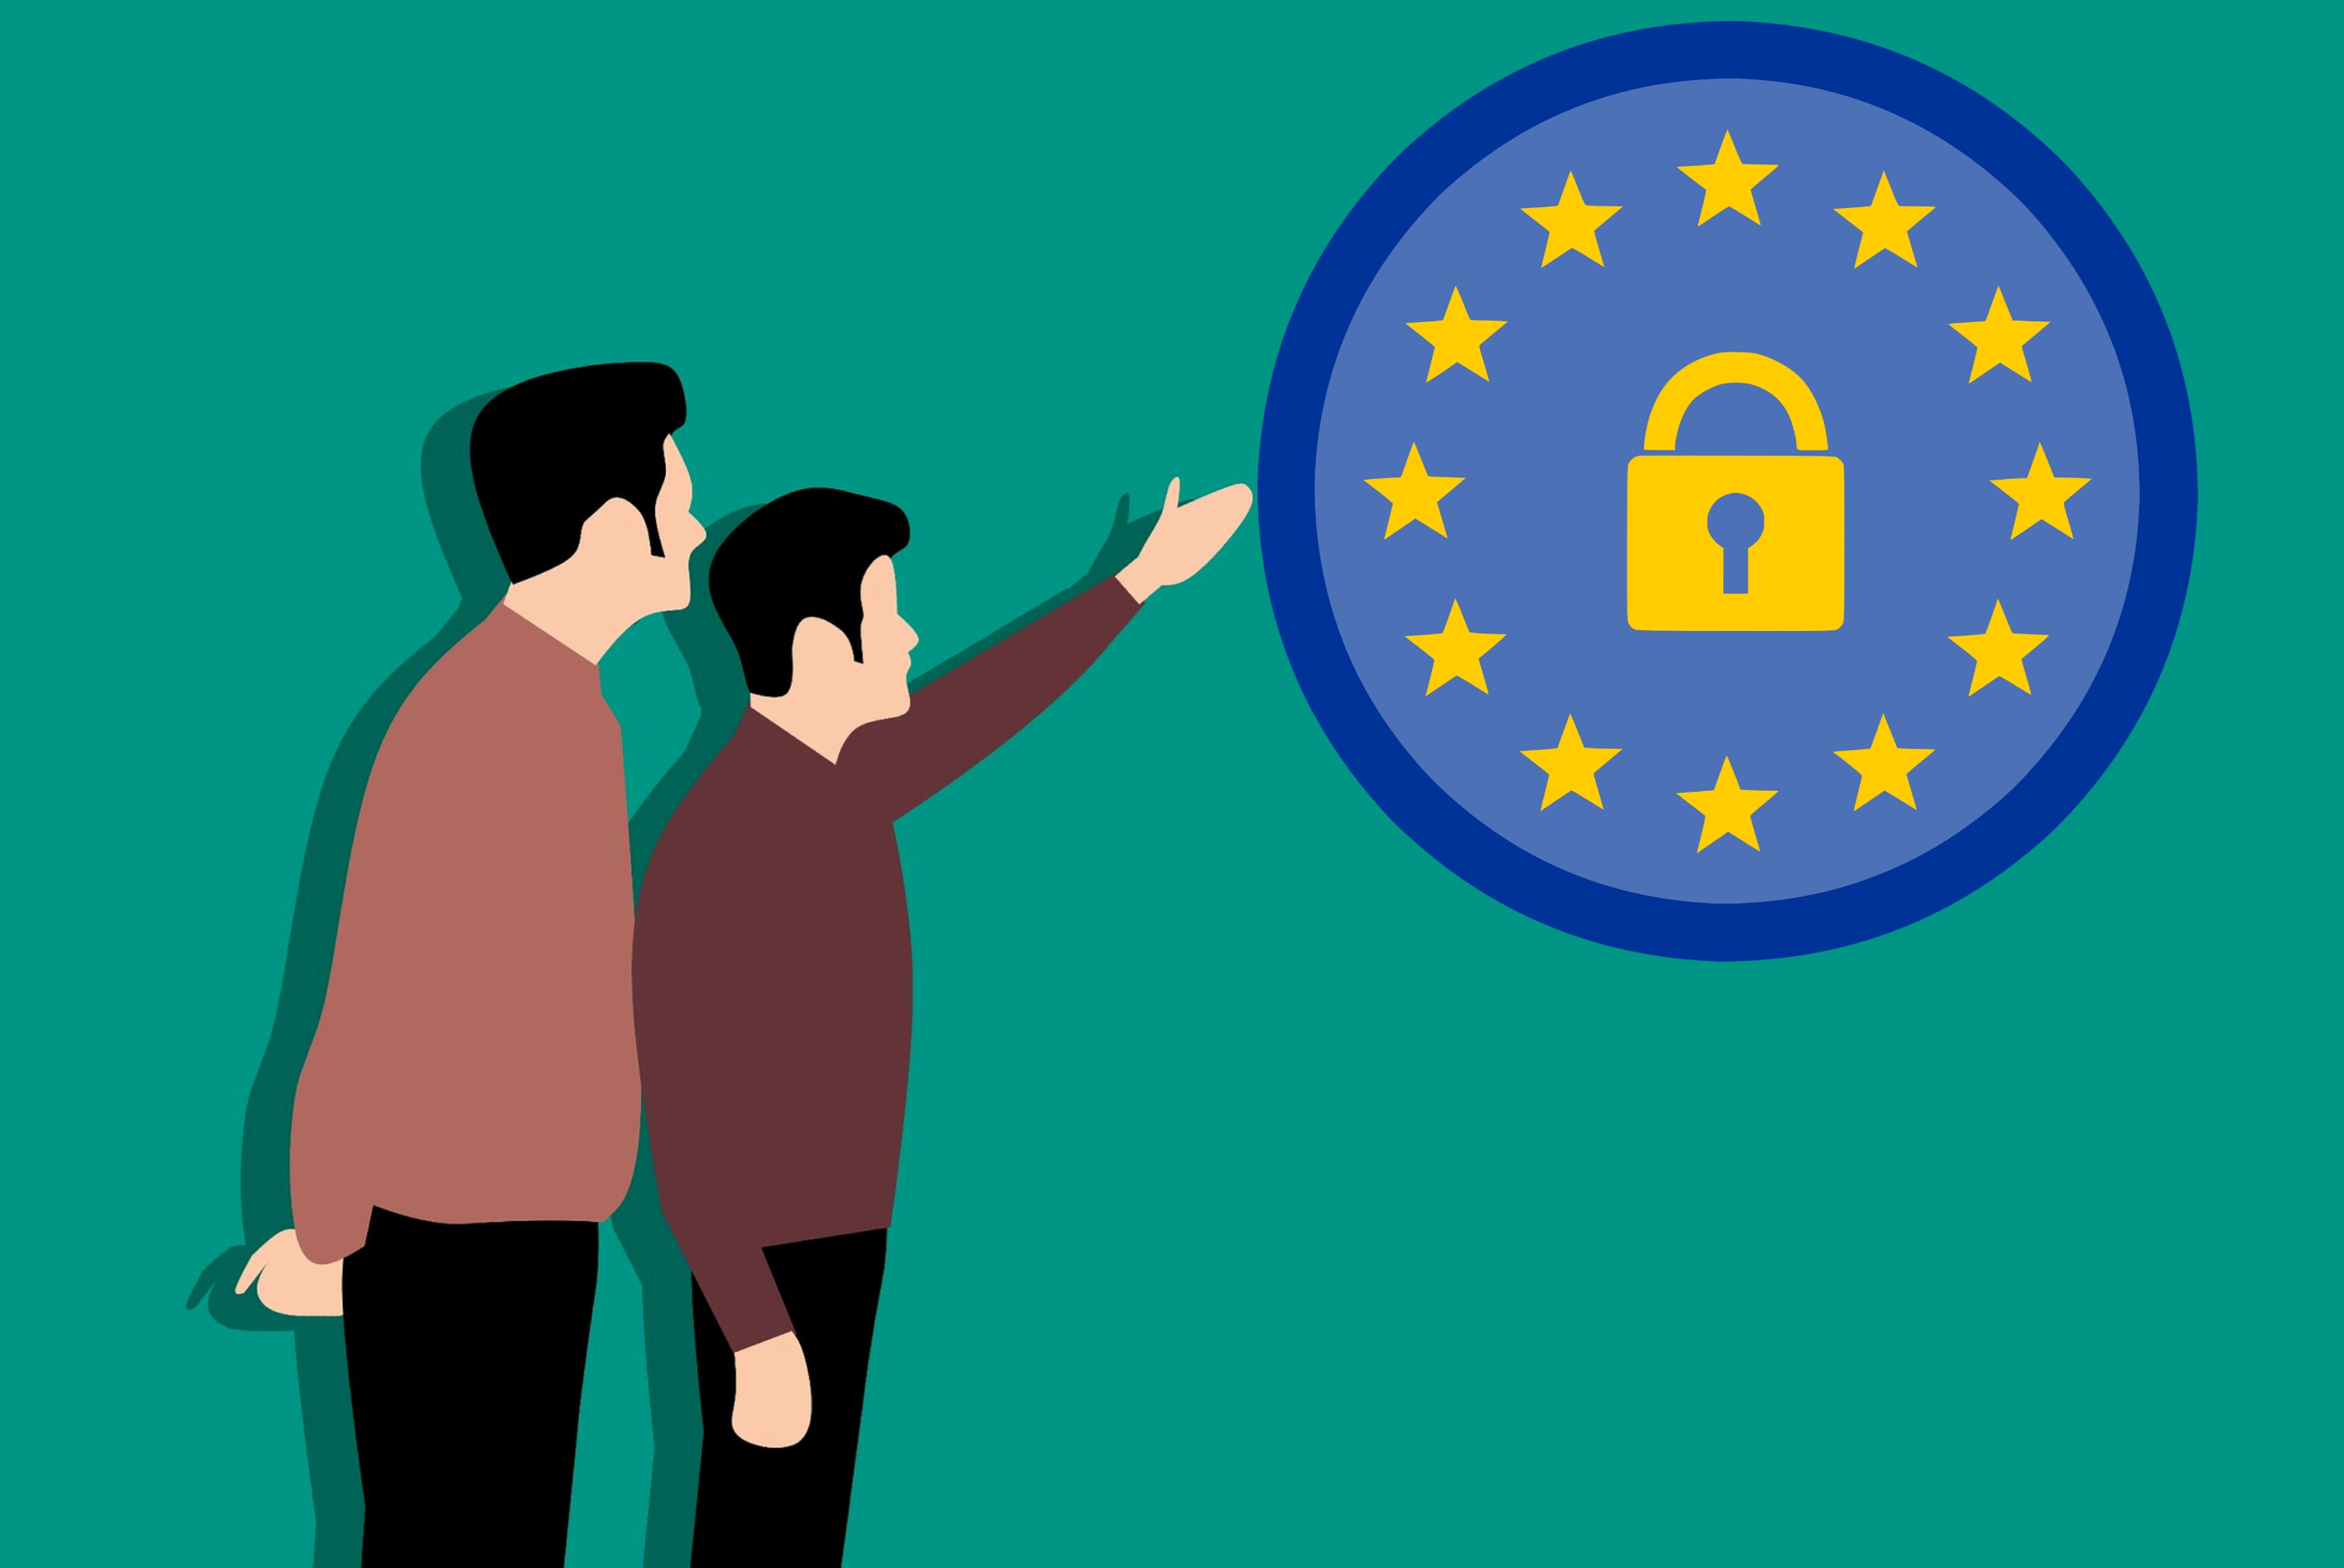 EU logo with security sign